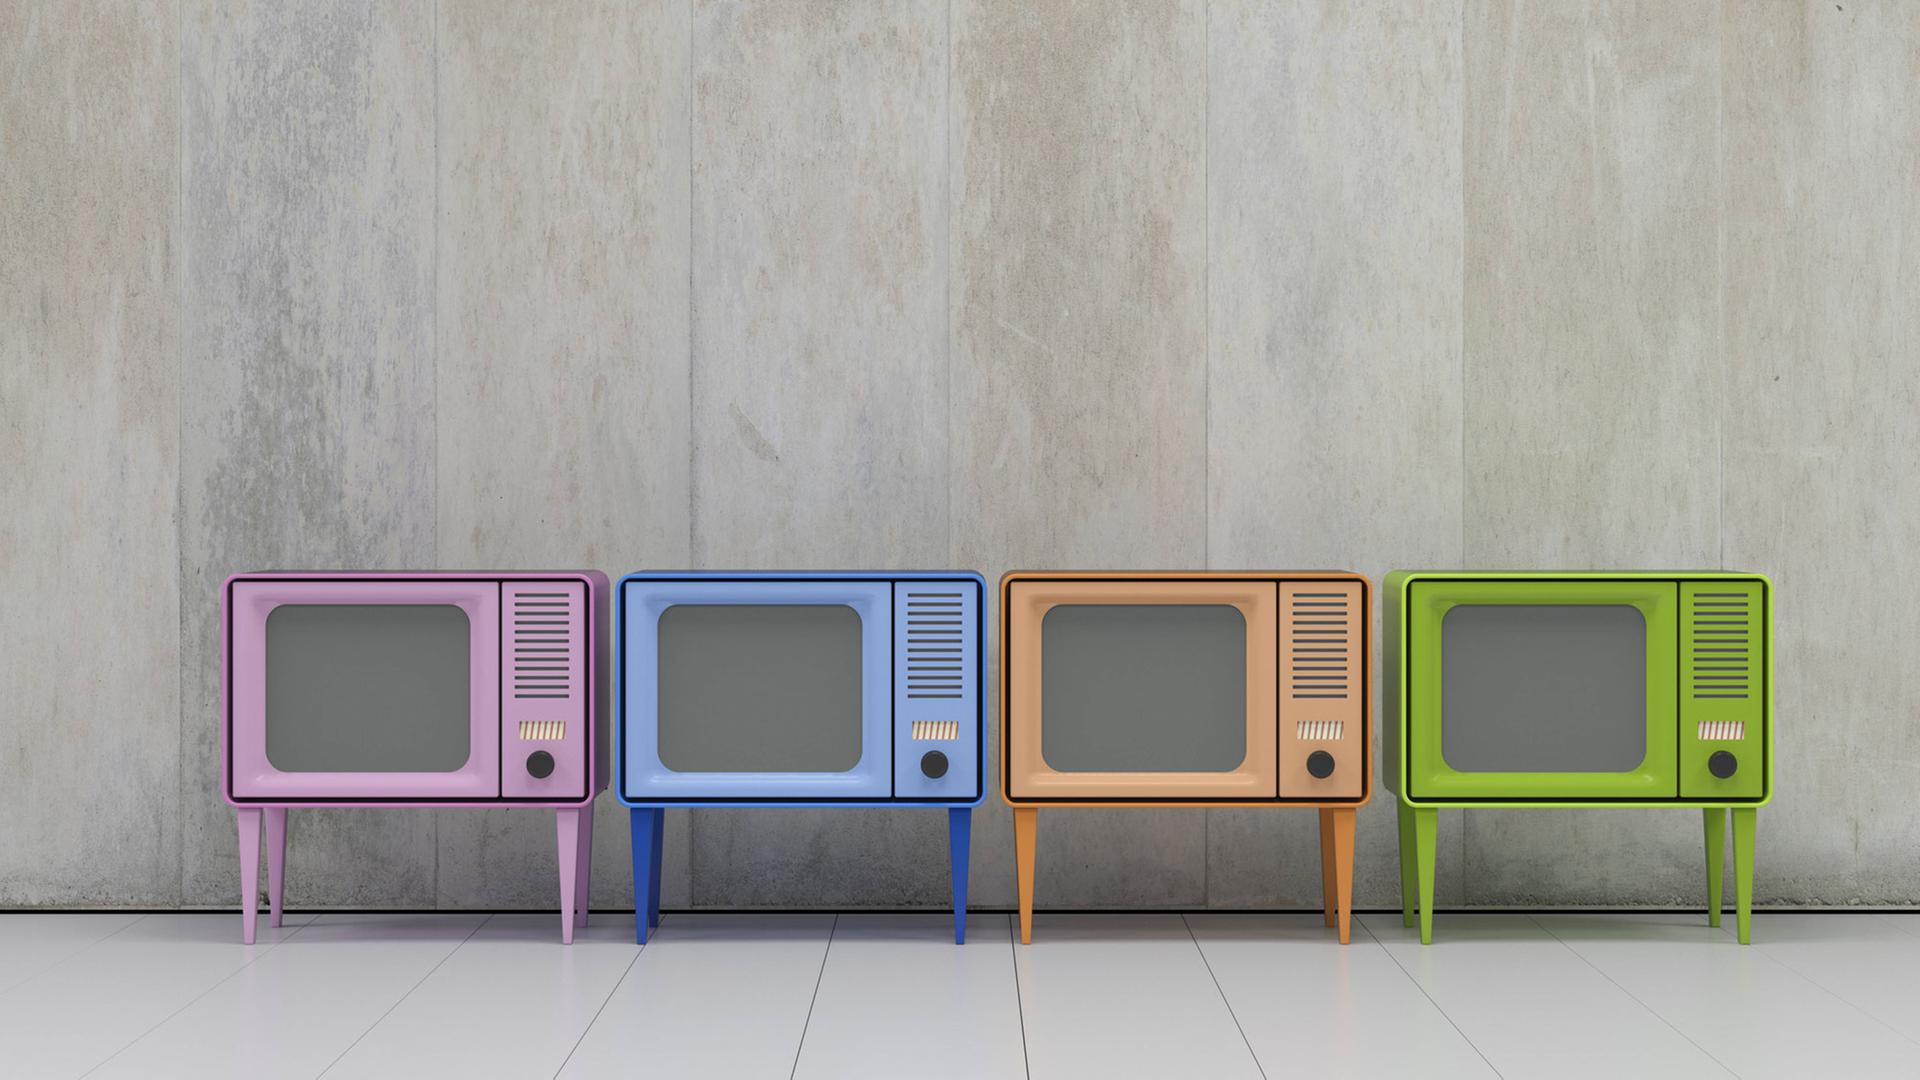 Das Bild zeigt vier Fernsehgeräte in vier verschiedenen Farben vor einer grauen Wand.